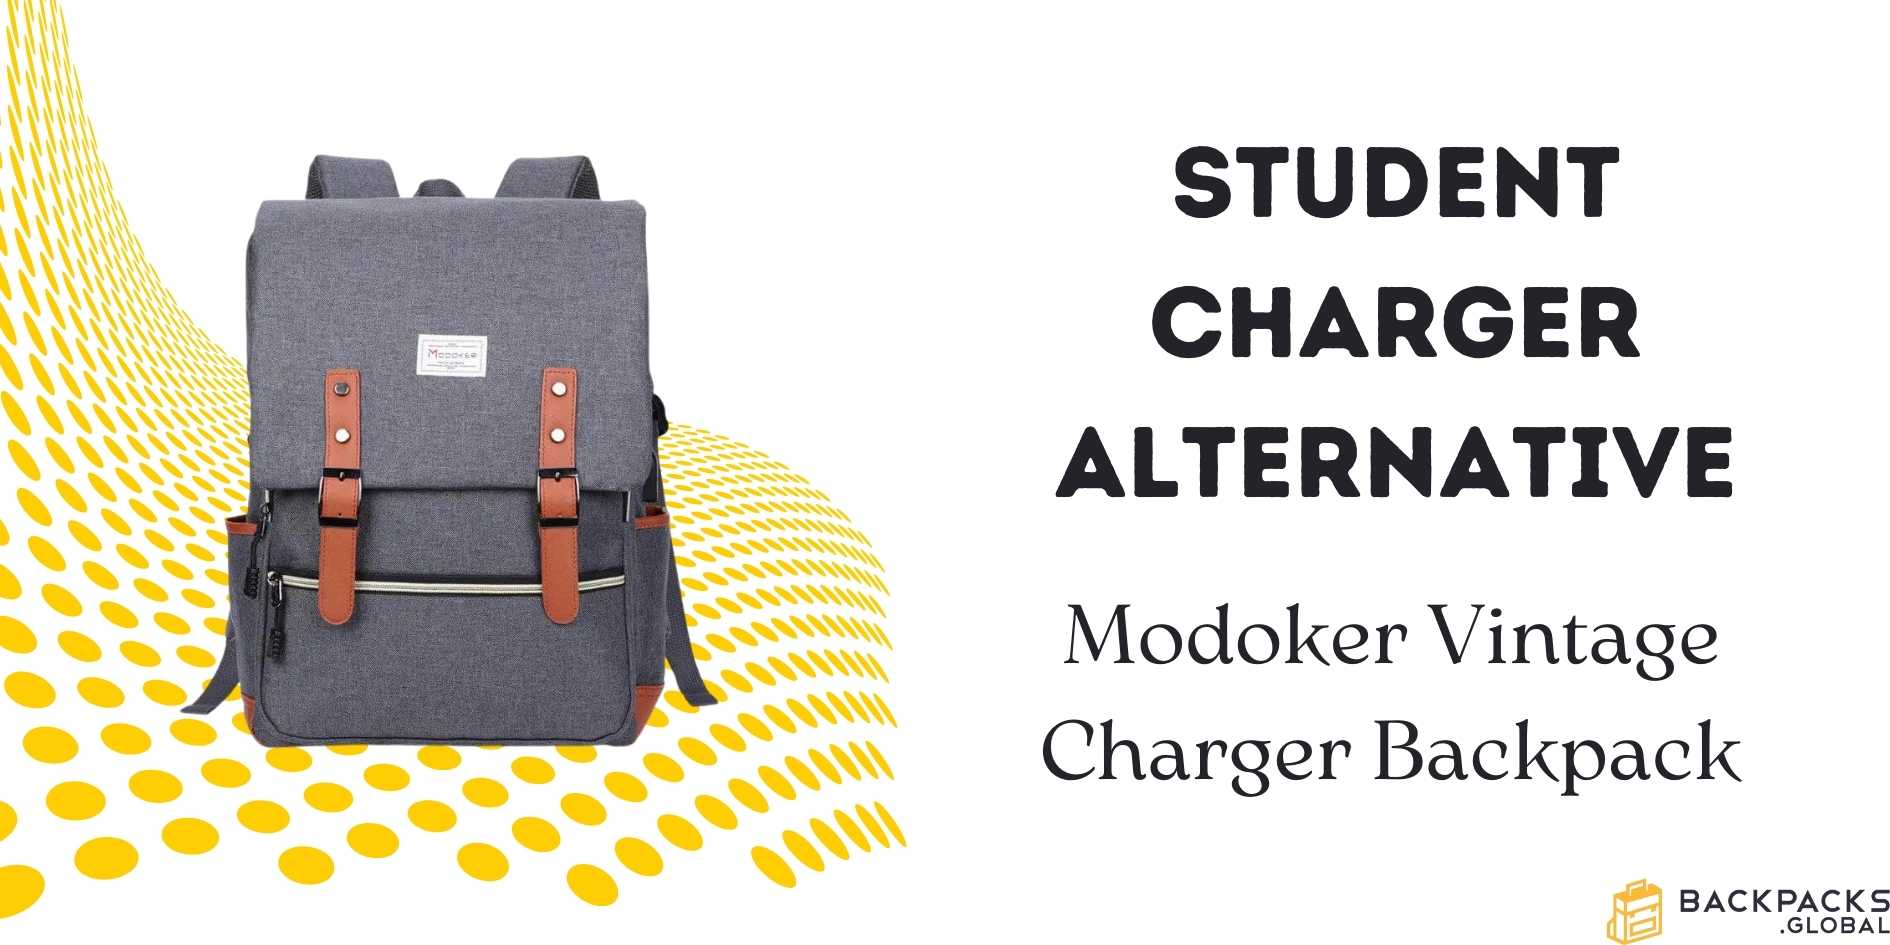 Modoker Vintage Charger Backpack